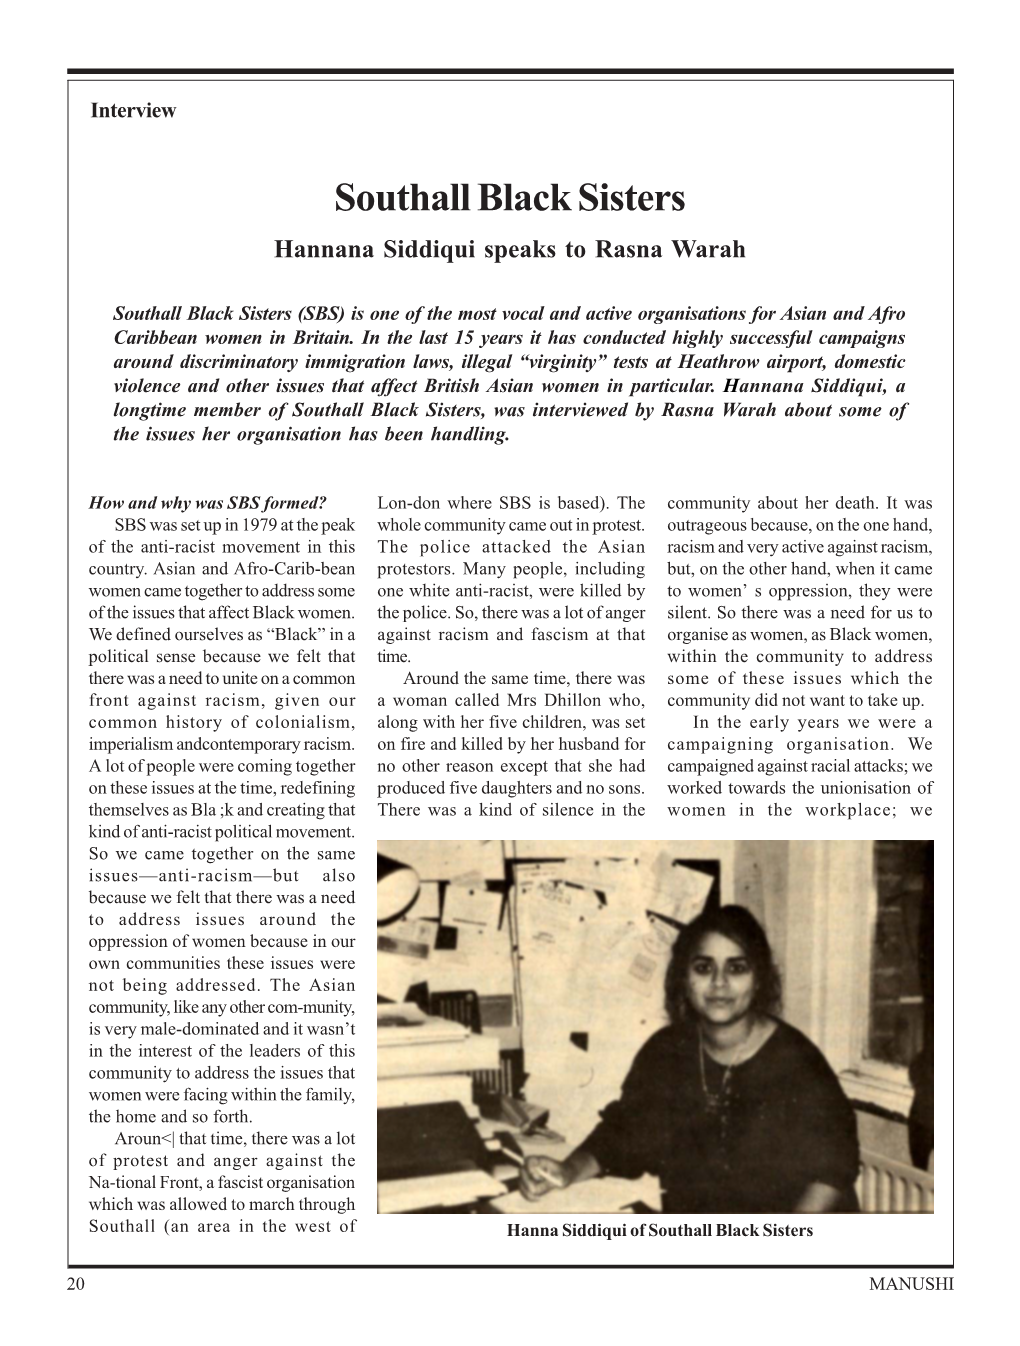 Southall Black Sisters Hannana Siddiqui Speaks to Rasna Warah